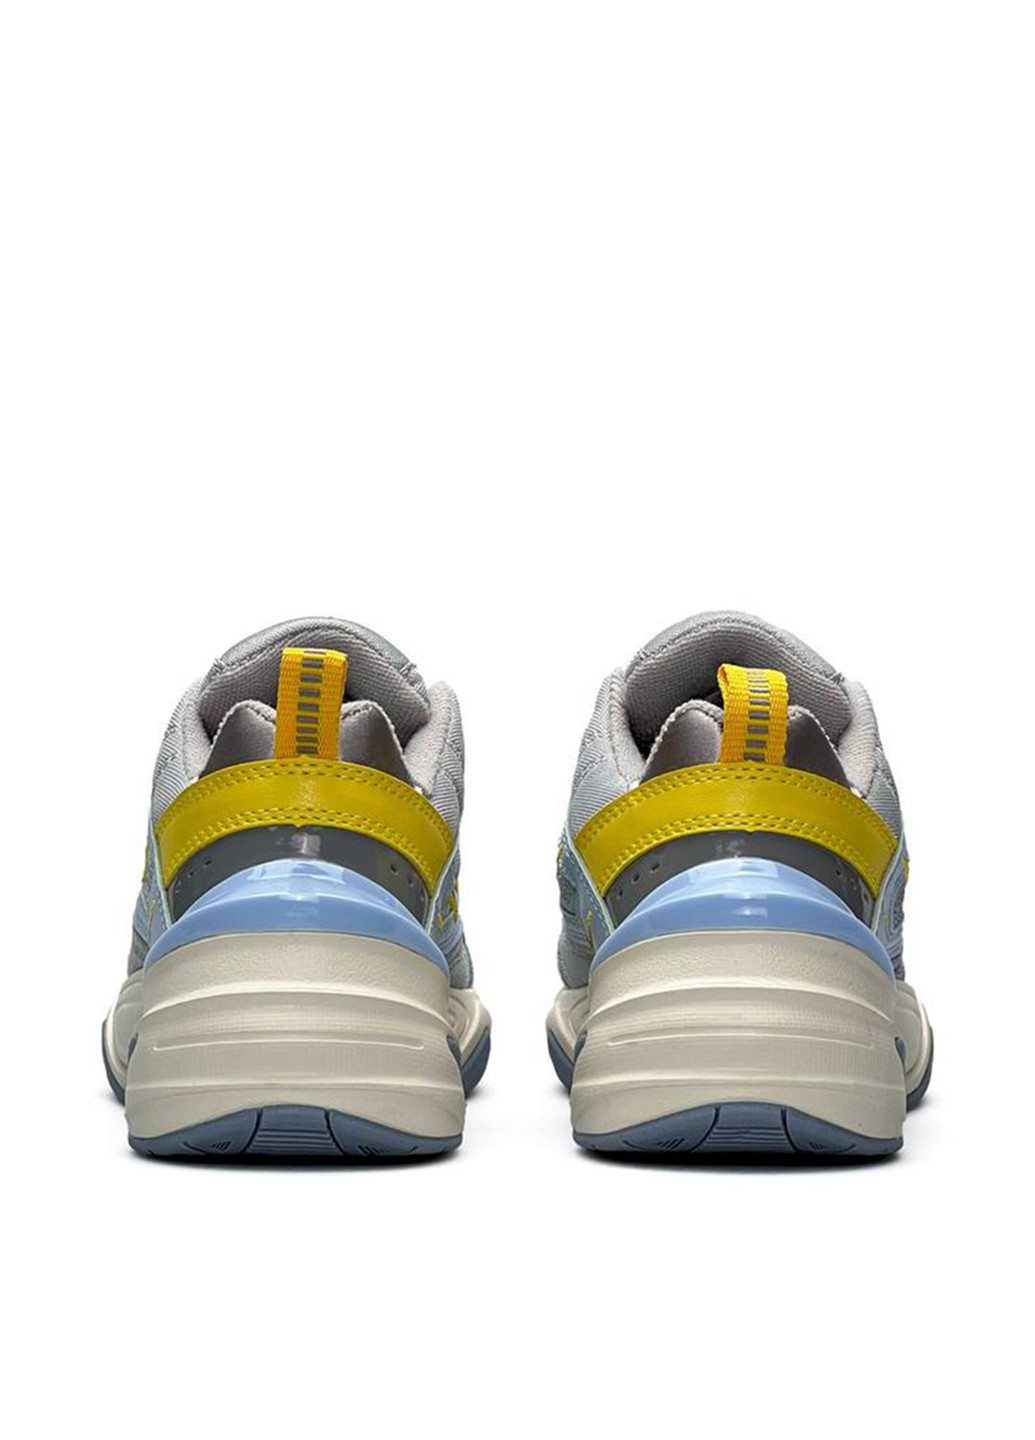 Цветные всесезонные кроссовки Nike